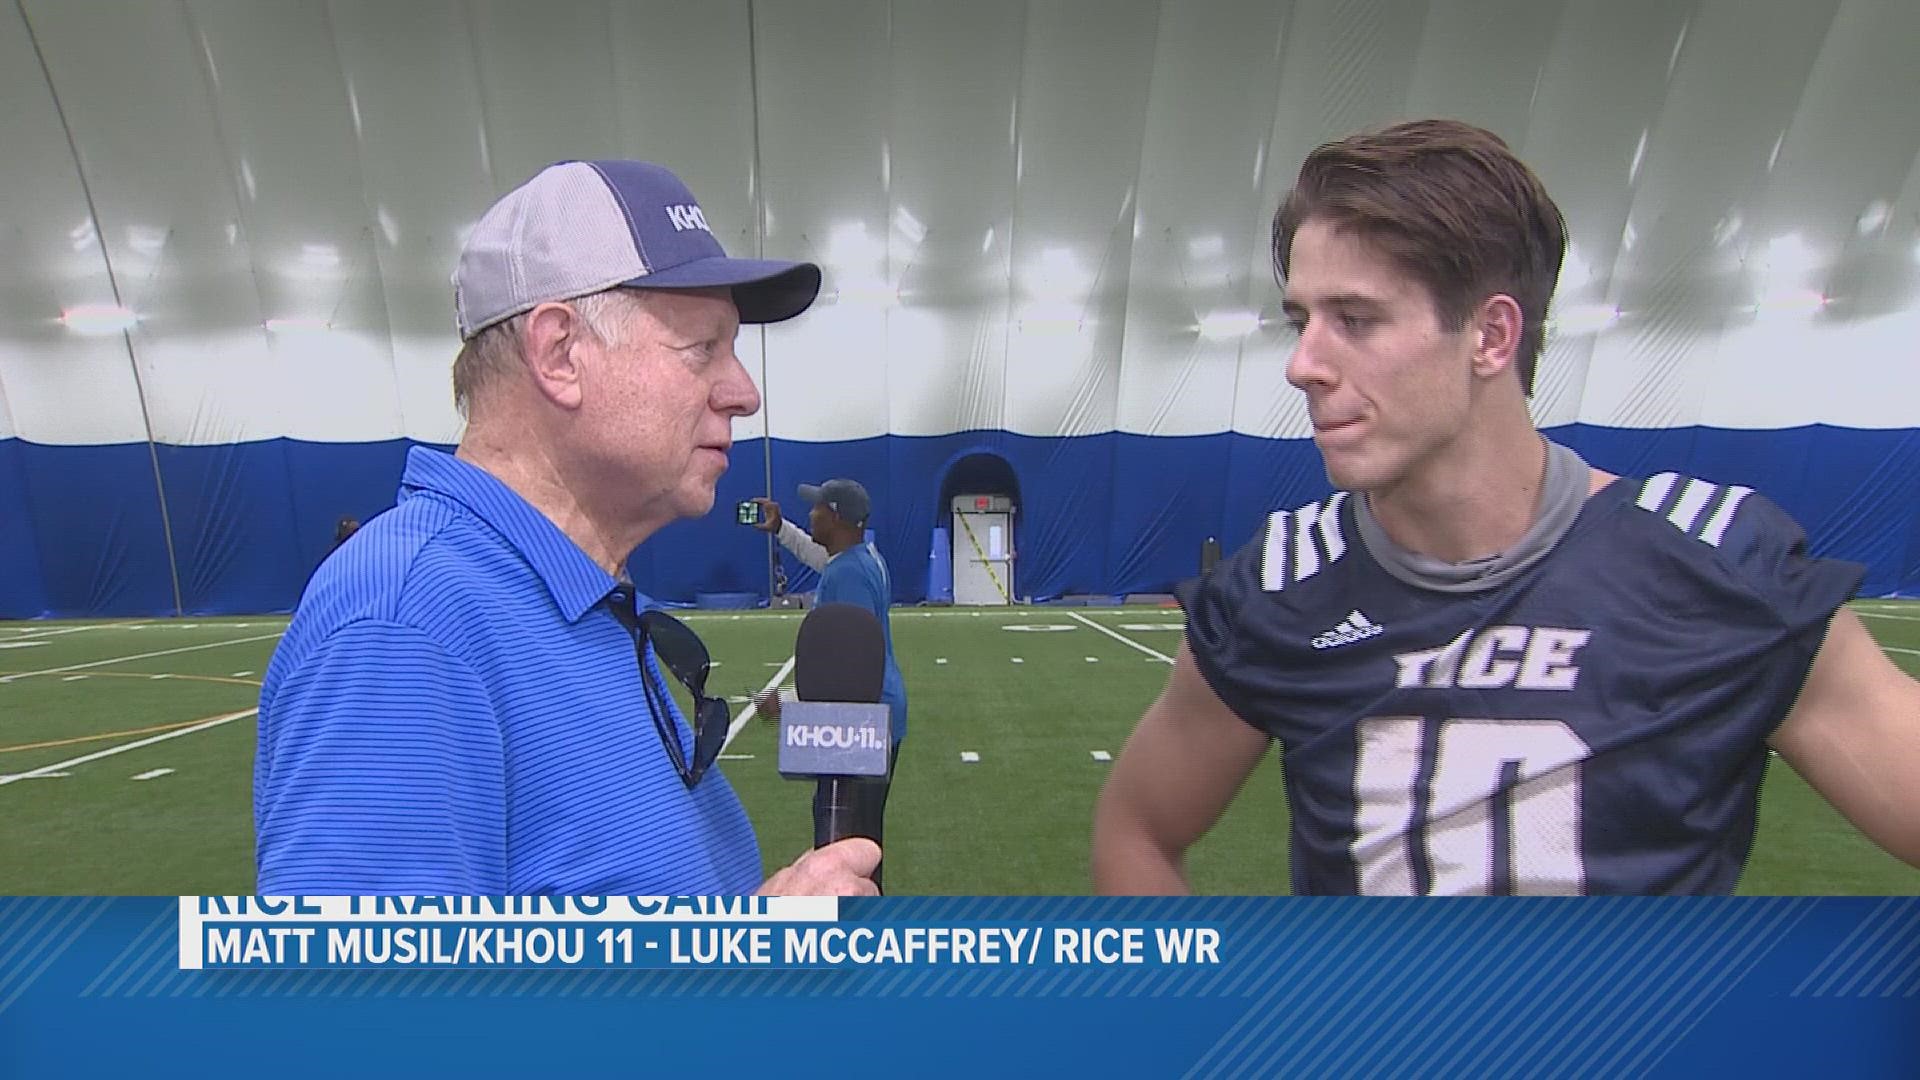 KHOU 11's Matt Musil caught up with Luke McCaffrey at Rice University's training camp.